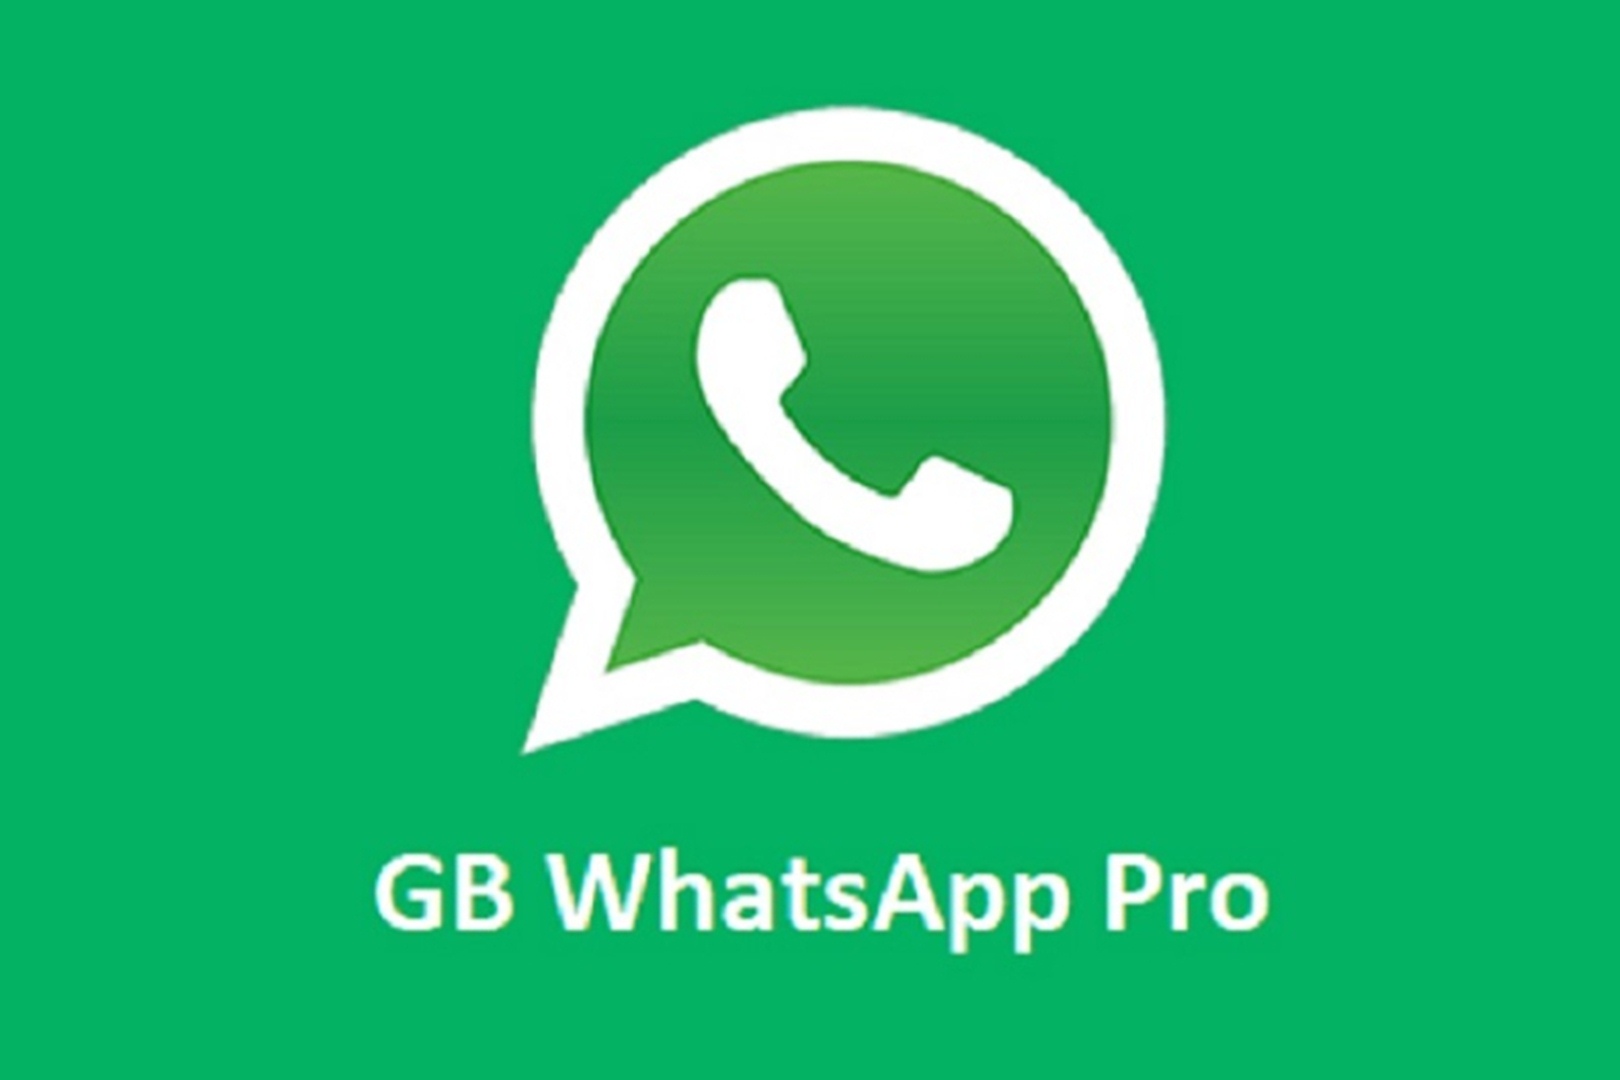 GB WhatsApp Pro Apk (Resmi) Versi Terbaru : Nikmati 25 Fitur Keren, Gratis!